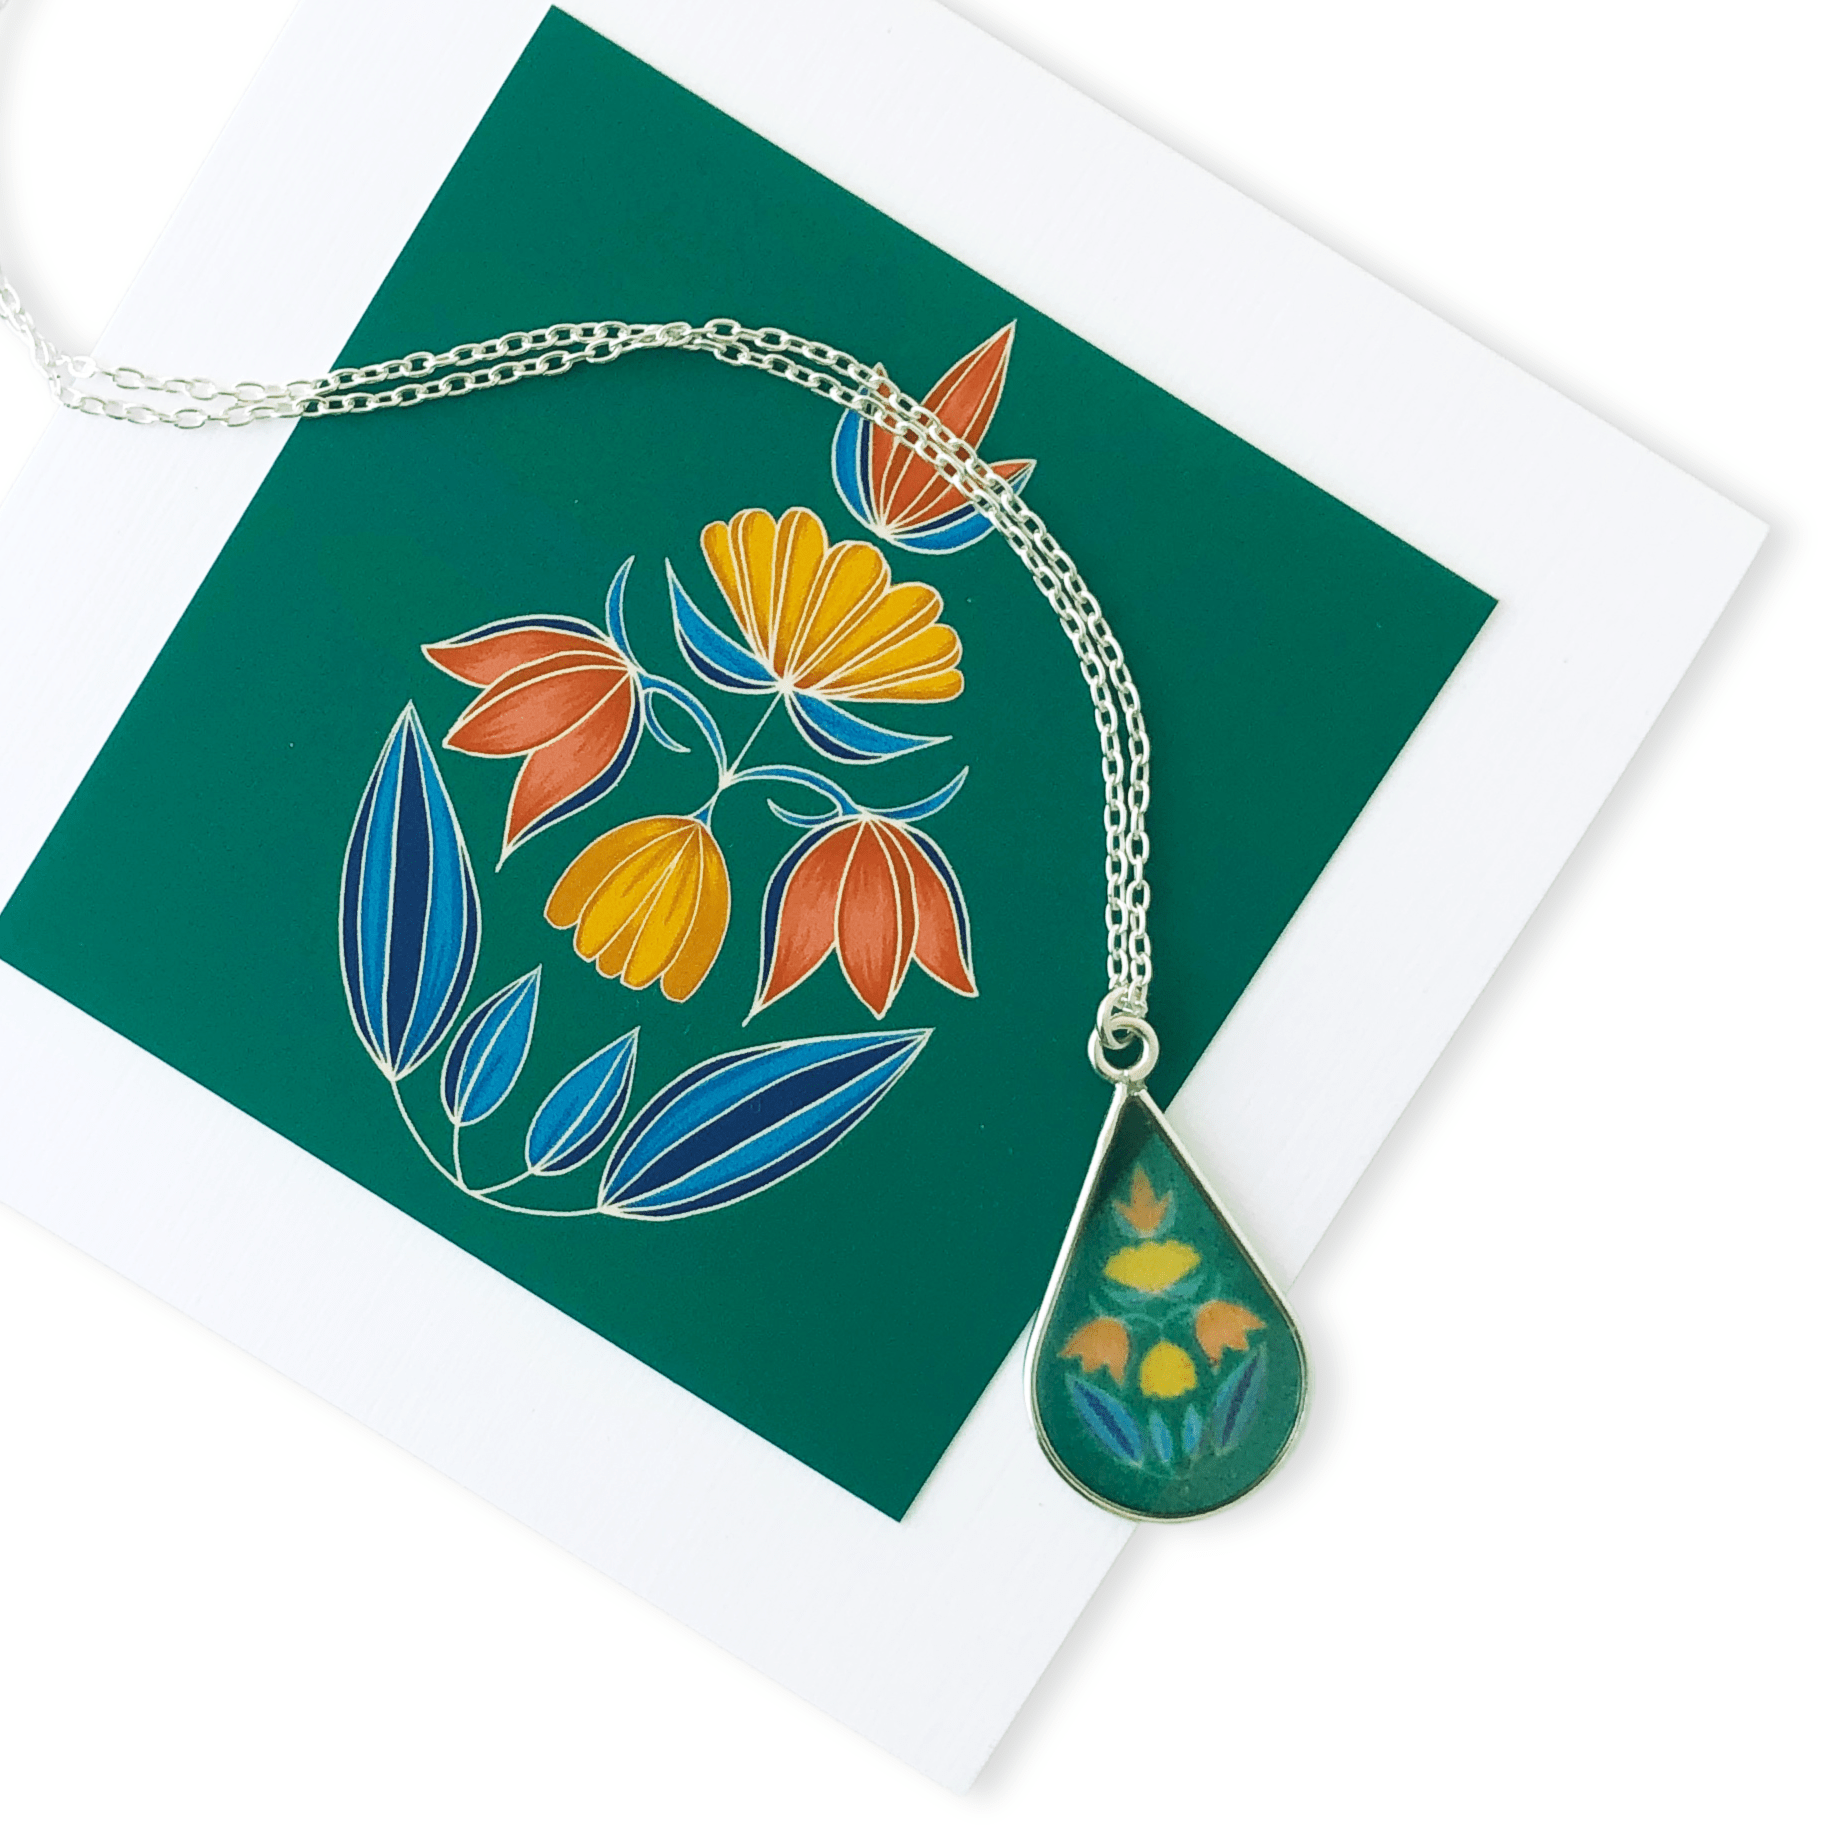 Illustrated Flower Garden Necklace by Jen Fox